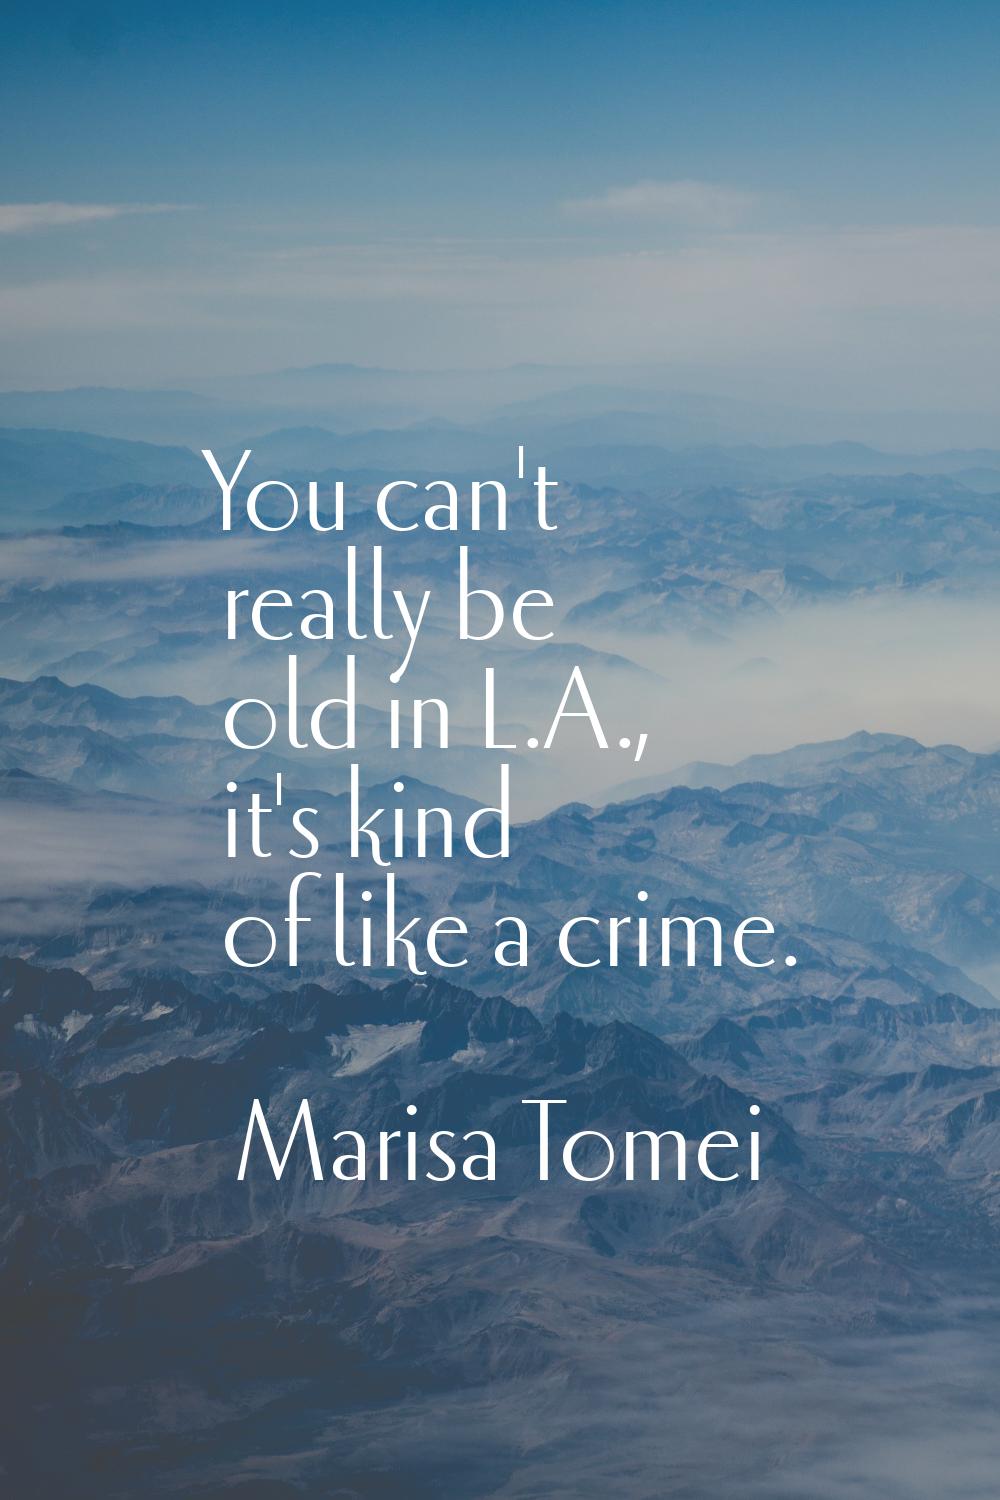 You can't really be old in L.A., it's kind of like a crime.